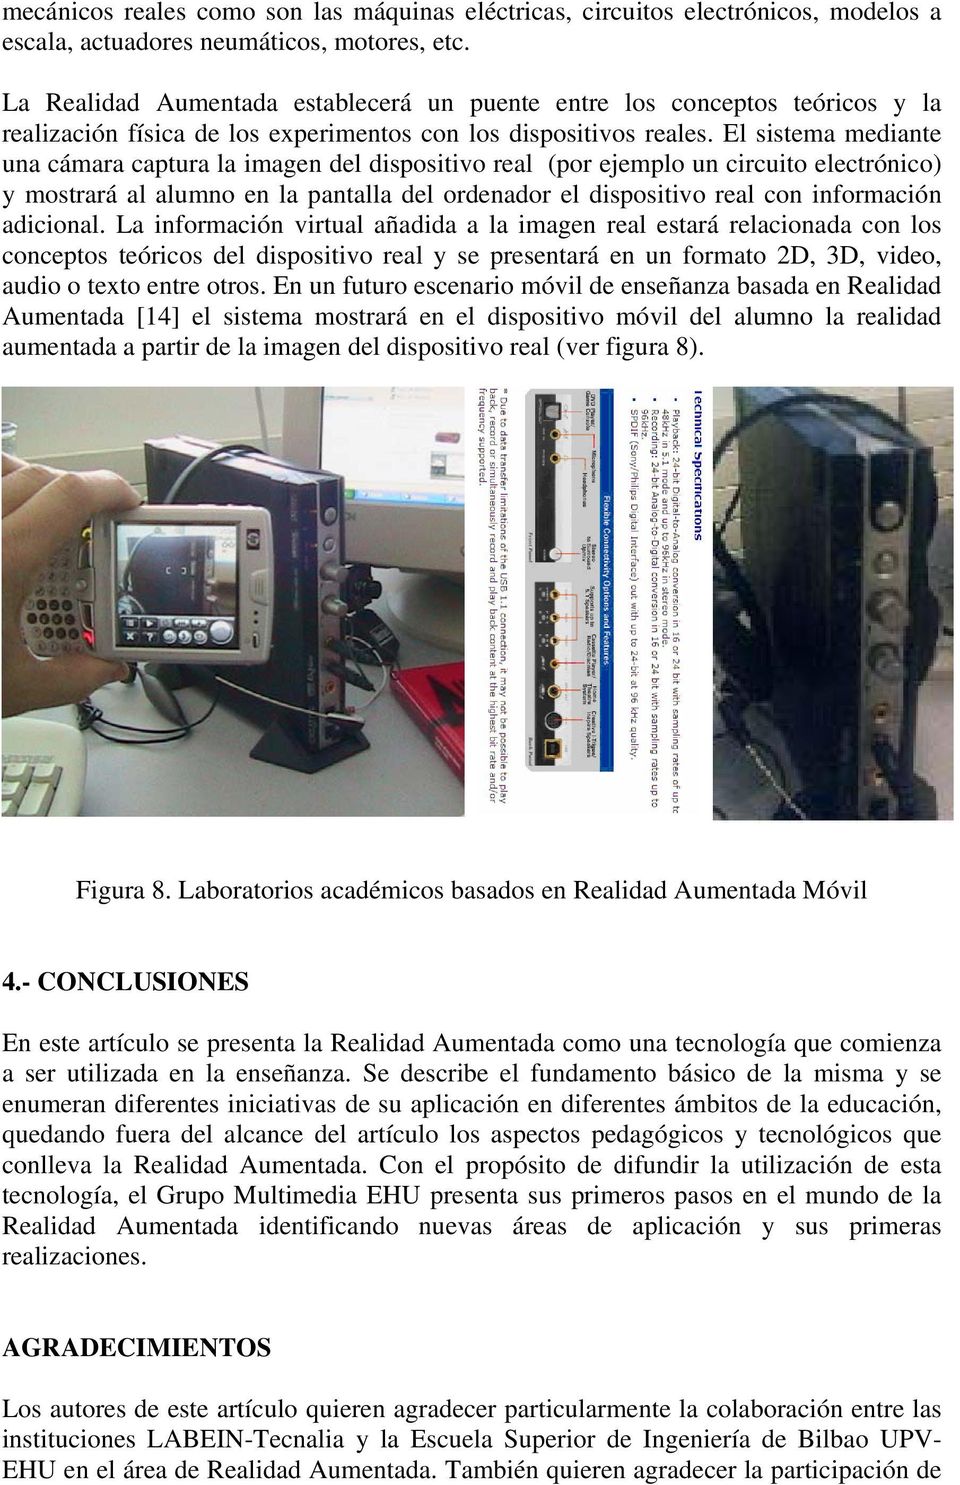 El sistema mediante una cámara captura la imagen del dispositivo real (por ejemplo un circuito electrónico) y mostrará al alumno en la pantalla del ordenador el dispositivo real con información